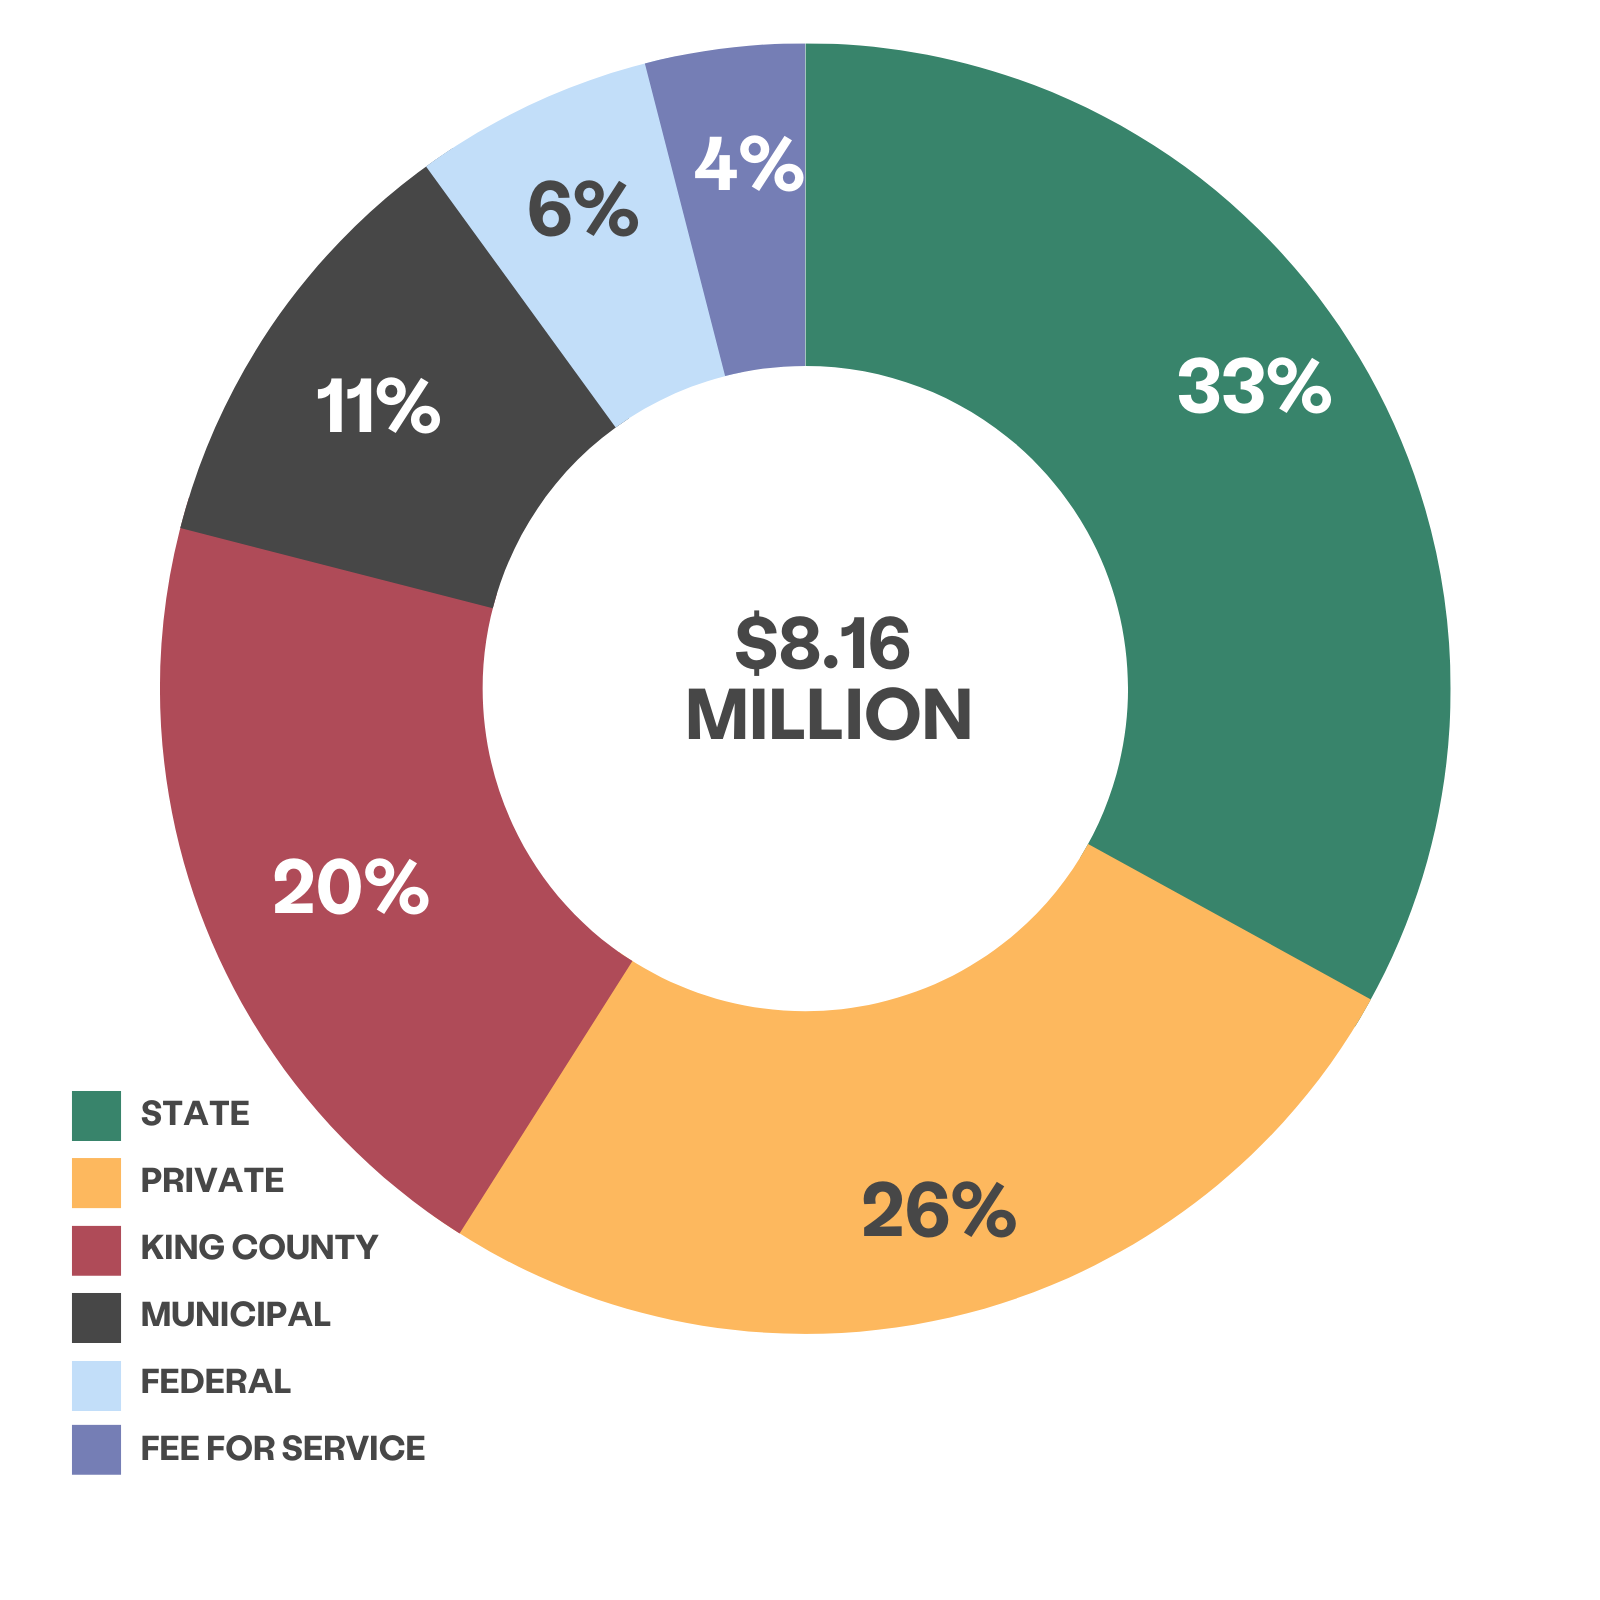 Разноцветное колесо, показывающее процент дохода по источникам. Зеленым цветом 33% обозначен штат, желтым цветом 26% обозначены частные спонсоры, красным цветом 20% обозначен округ Кинг, темно-серым цветом обозначена 11 муниципальная власть, голубым цветом 6% обозначен федеральный уровень, а фиолетовым цветом 4% обозначена плата за услуги.